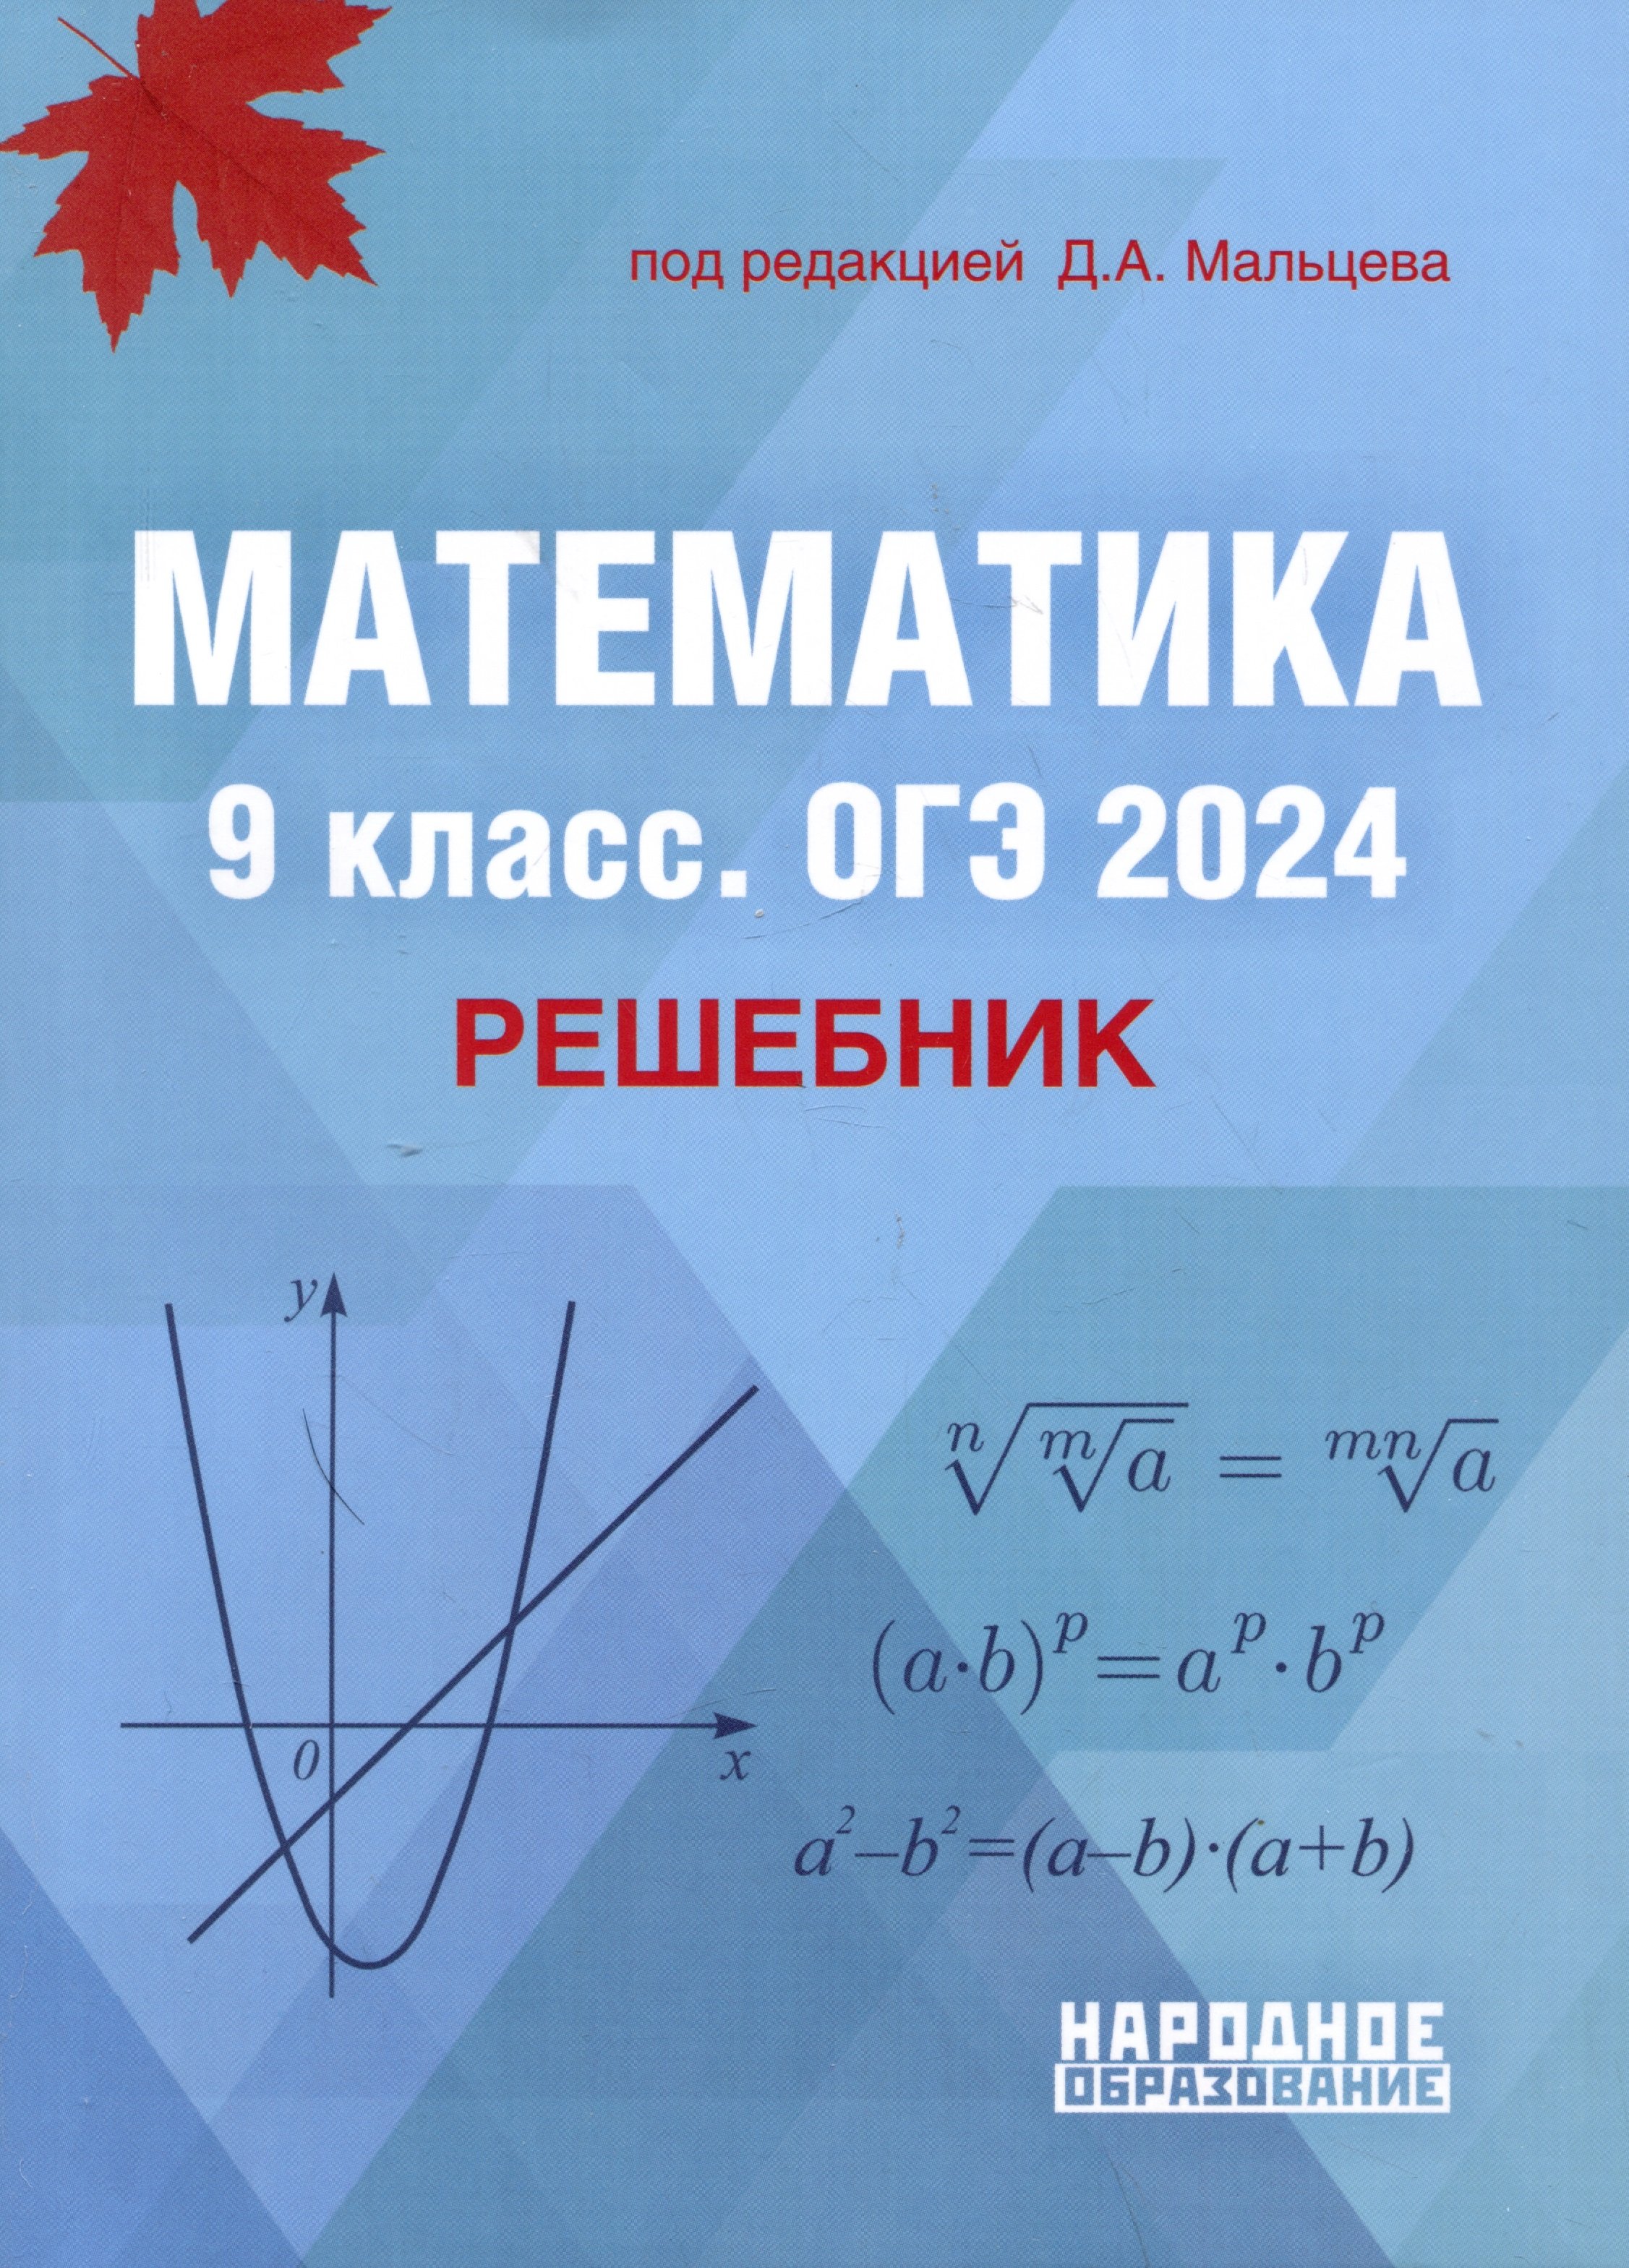 Мальцев Д.А. - Математика. 9 класс. ОГЭ 2024. Решебник